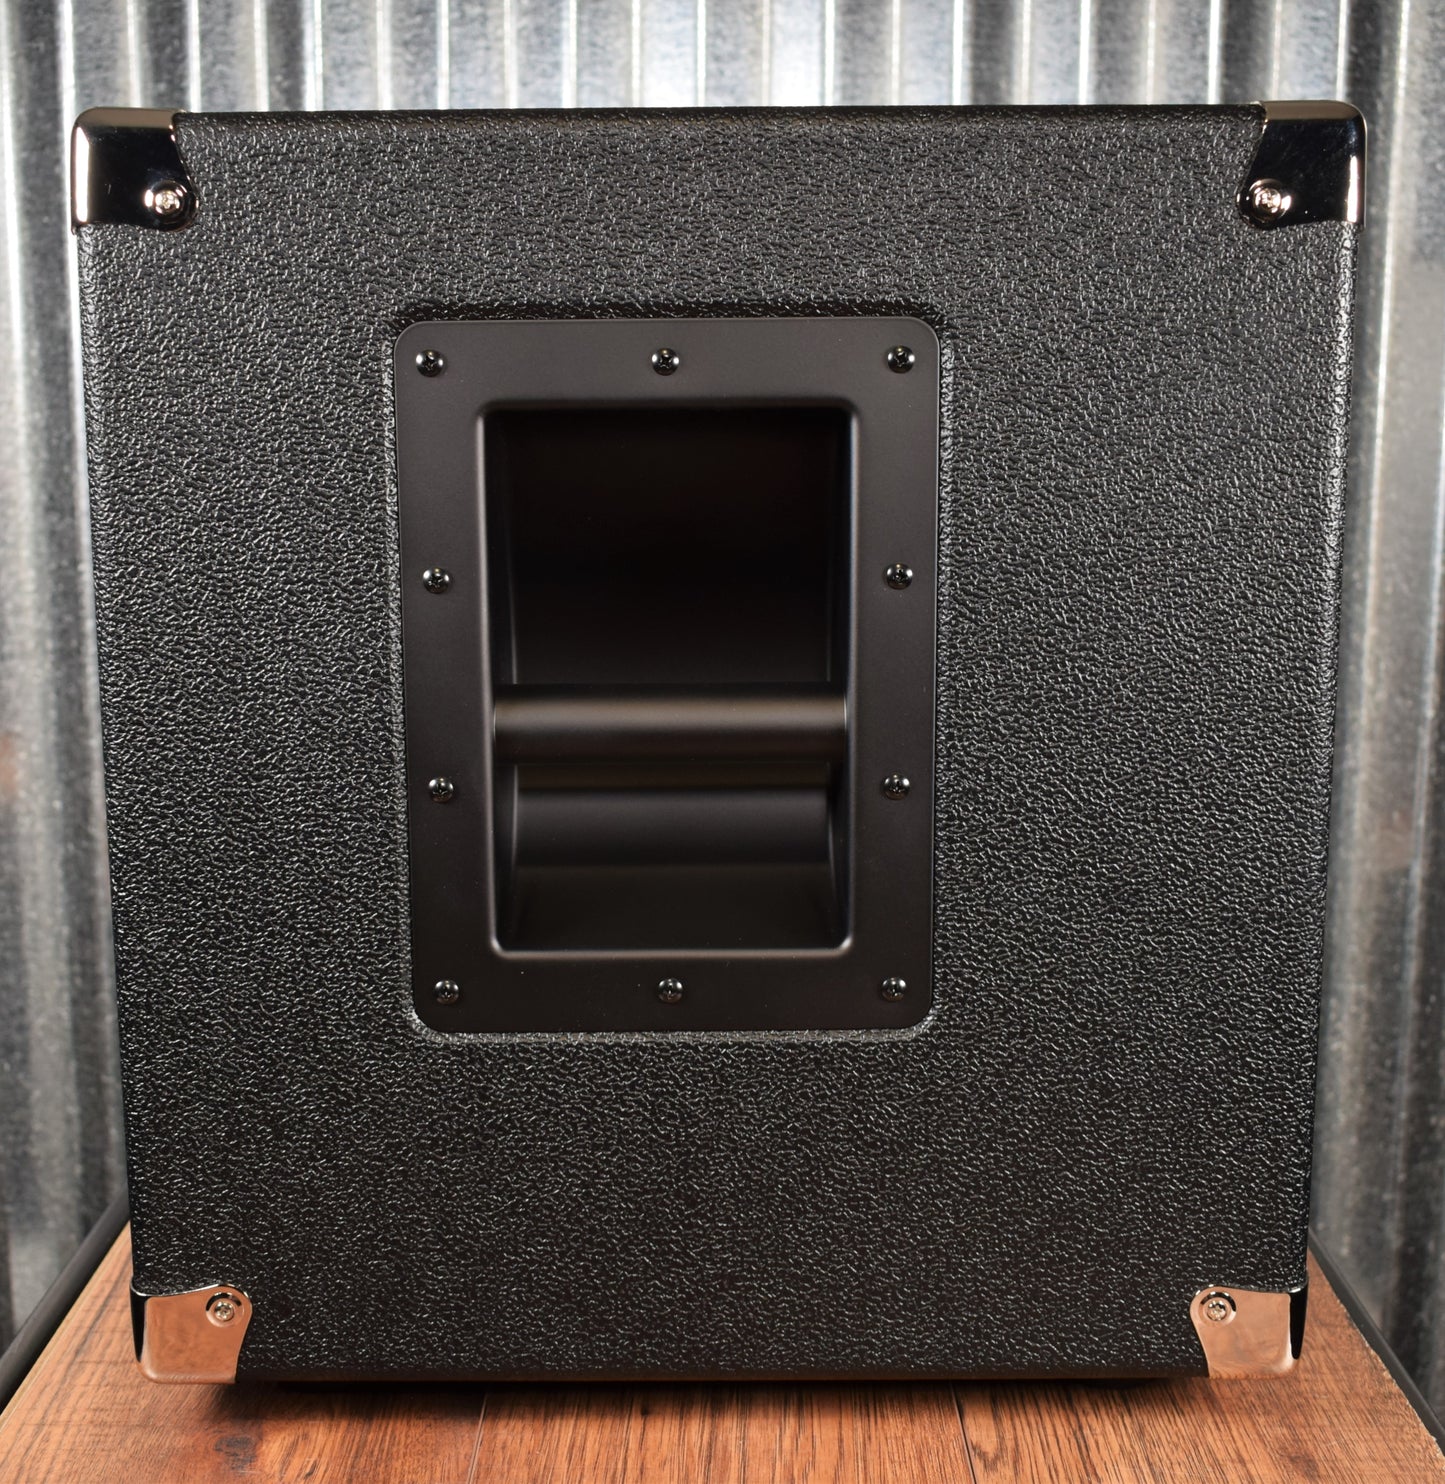 Hartke HyDrive HD112 1x12" & Horn 300 Watt Bass Amp Speaker Cabinet